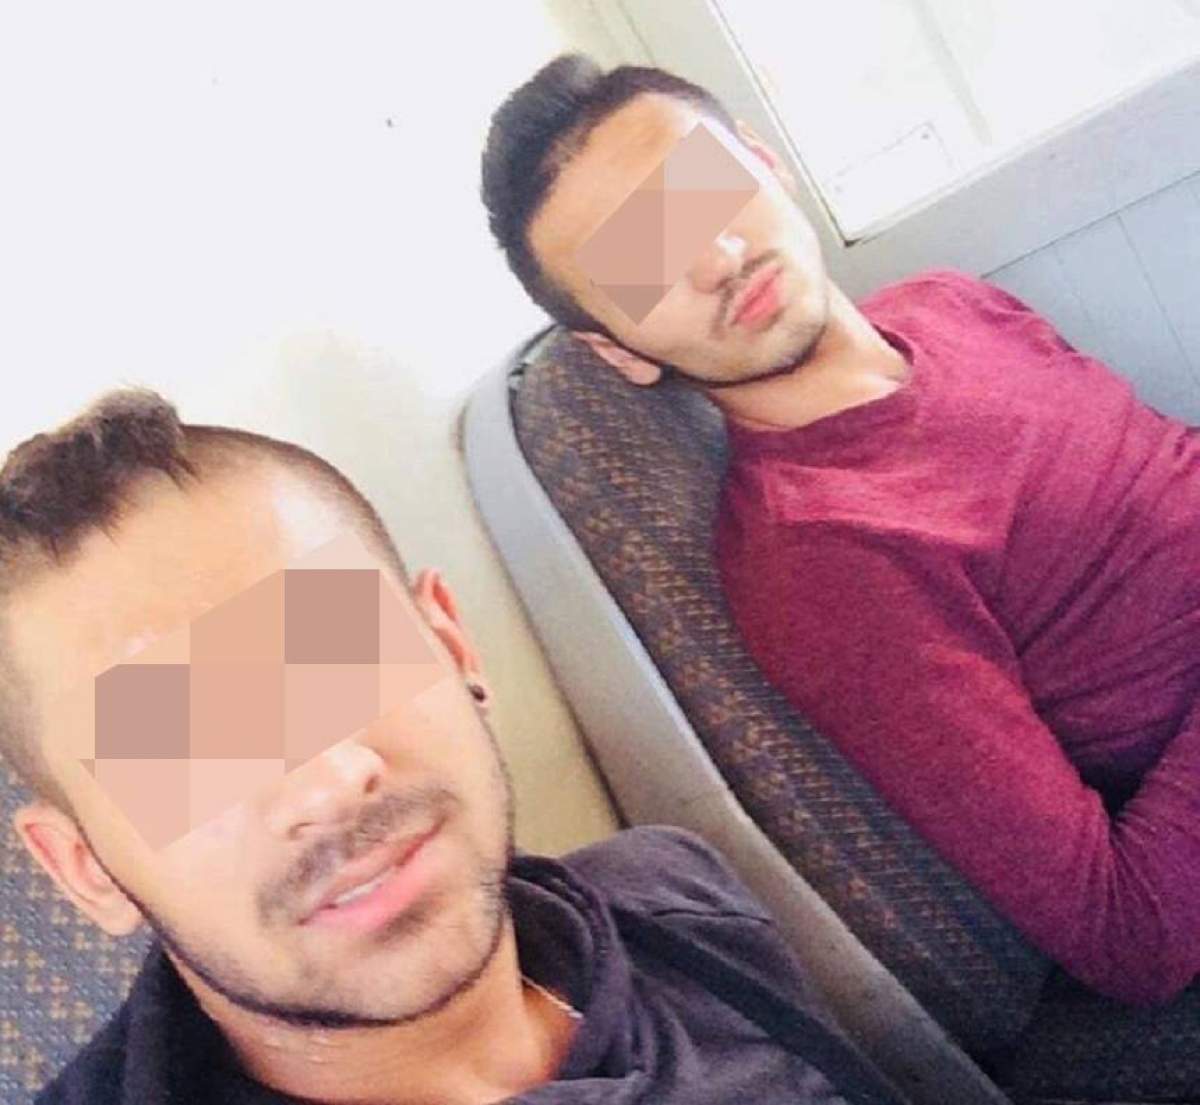 EXCLUSIV: Prietenul din copilărie al criminalului din Călărași, declarații șocante: „Era violent, avea niște probleme”